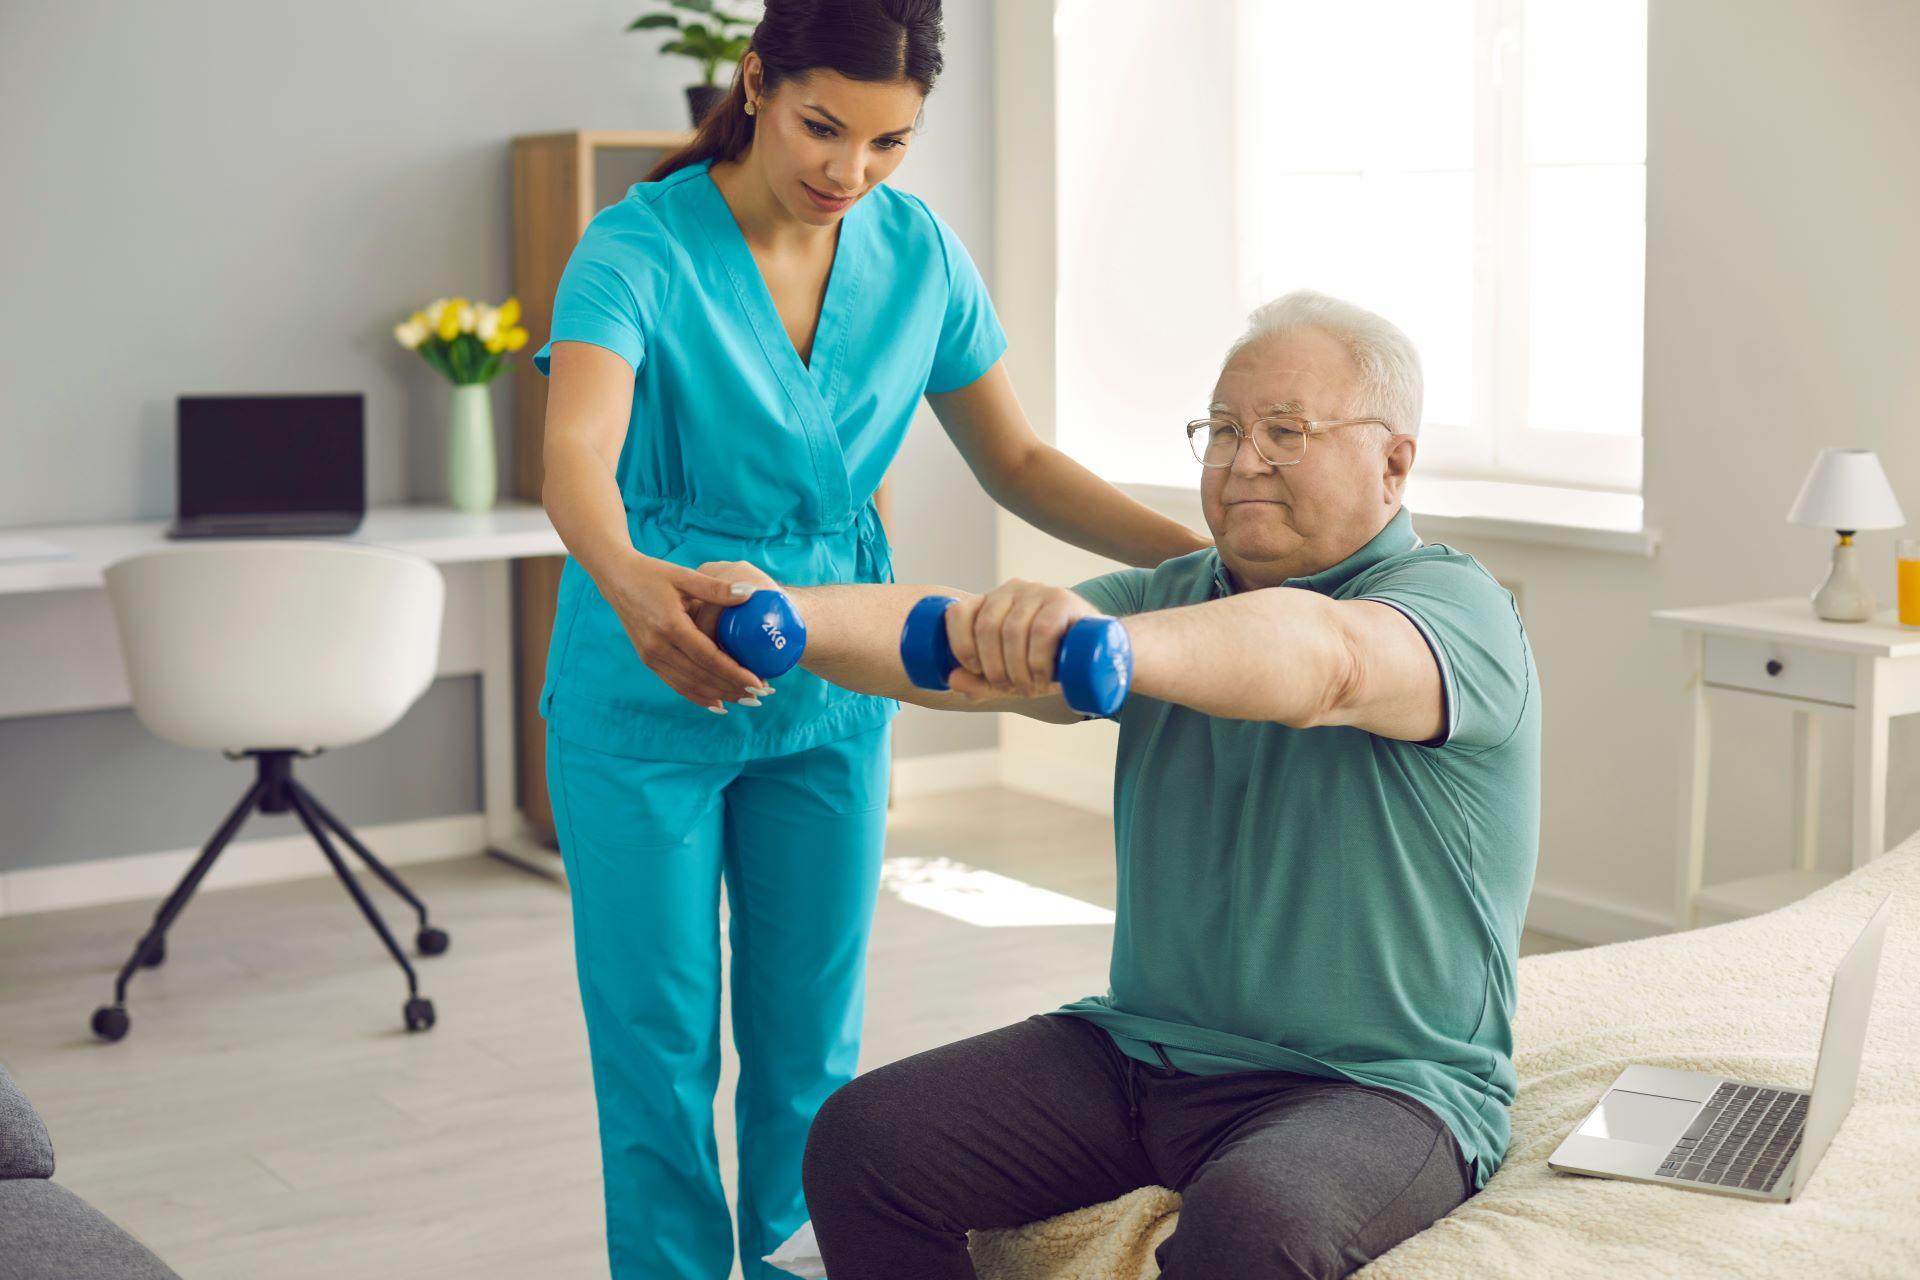 Ein Arzt, ein Physiotherapeut oder eine Krankenschwester prüft, wie zufrieden ein älterer Patient mit den Armübungen während des Wellness-Trainings ist. Hilfe, Physiotherapie und Seniorenrehabilitation